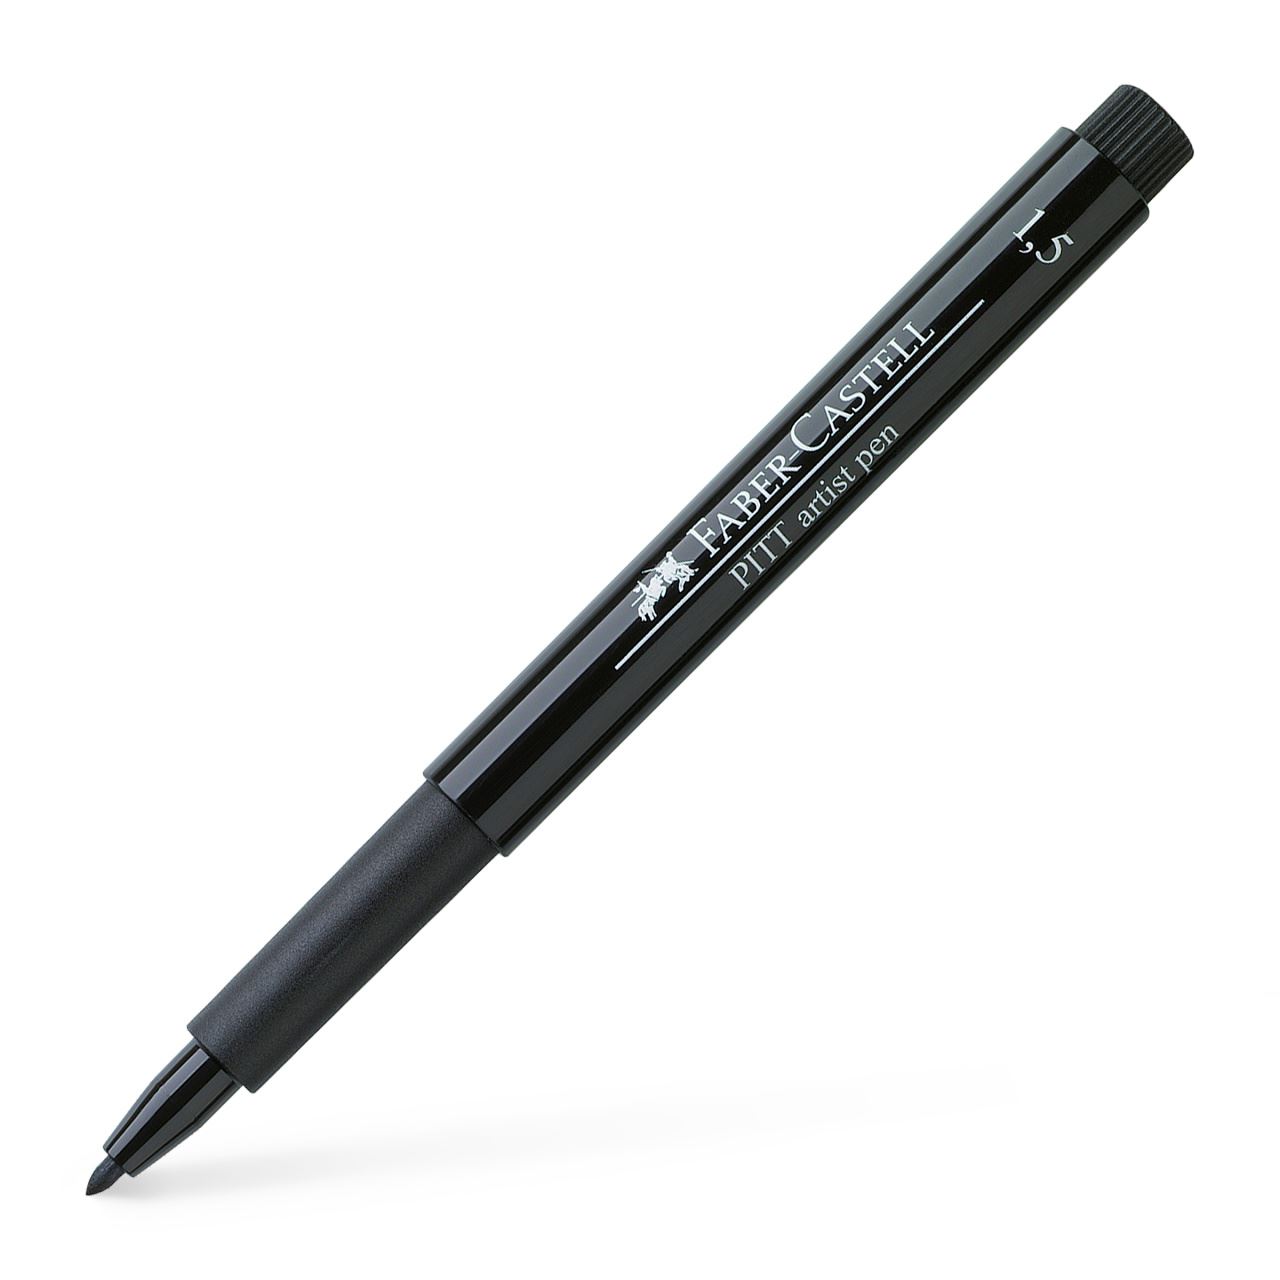 Faber-Castell - Rotulador Pitt Artist Pen punta redonda 1,5 negro